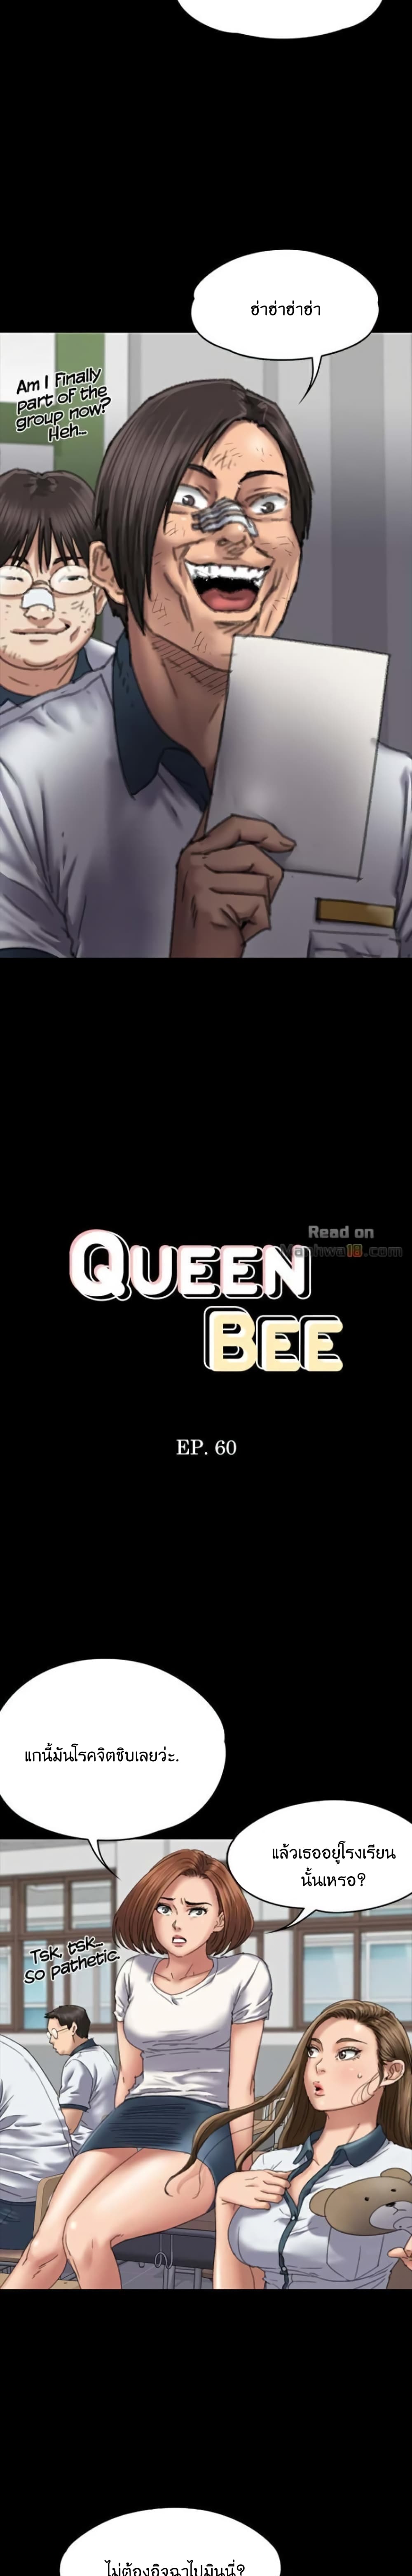 Queen Bee 60 (2)